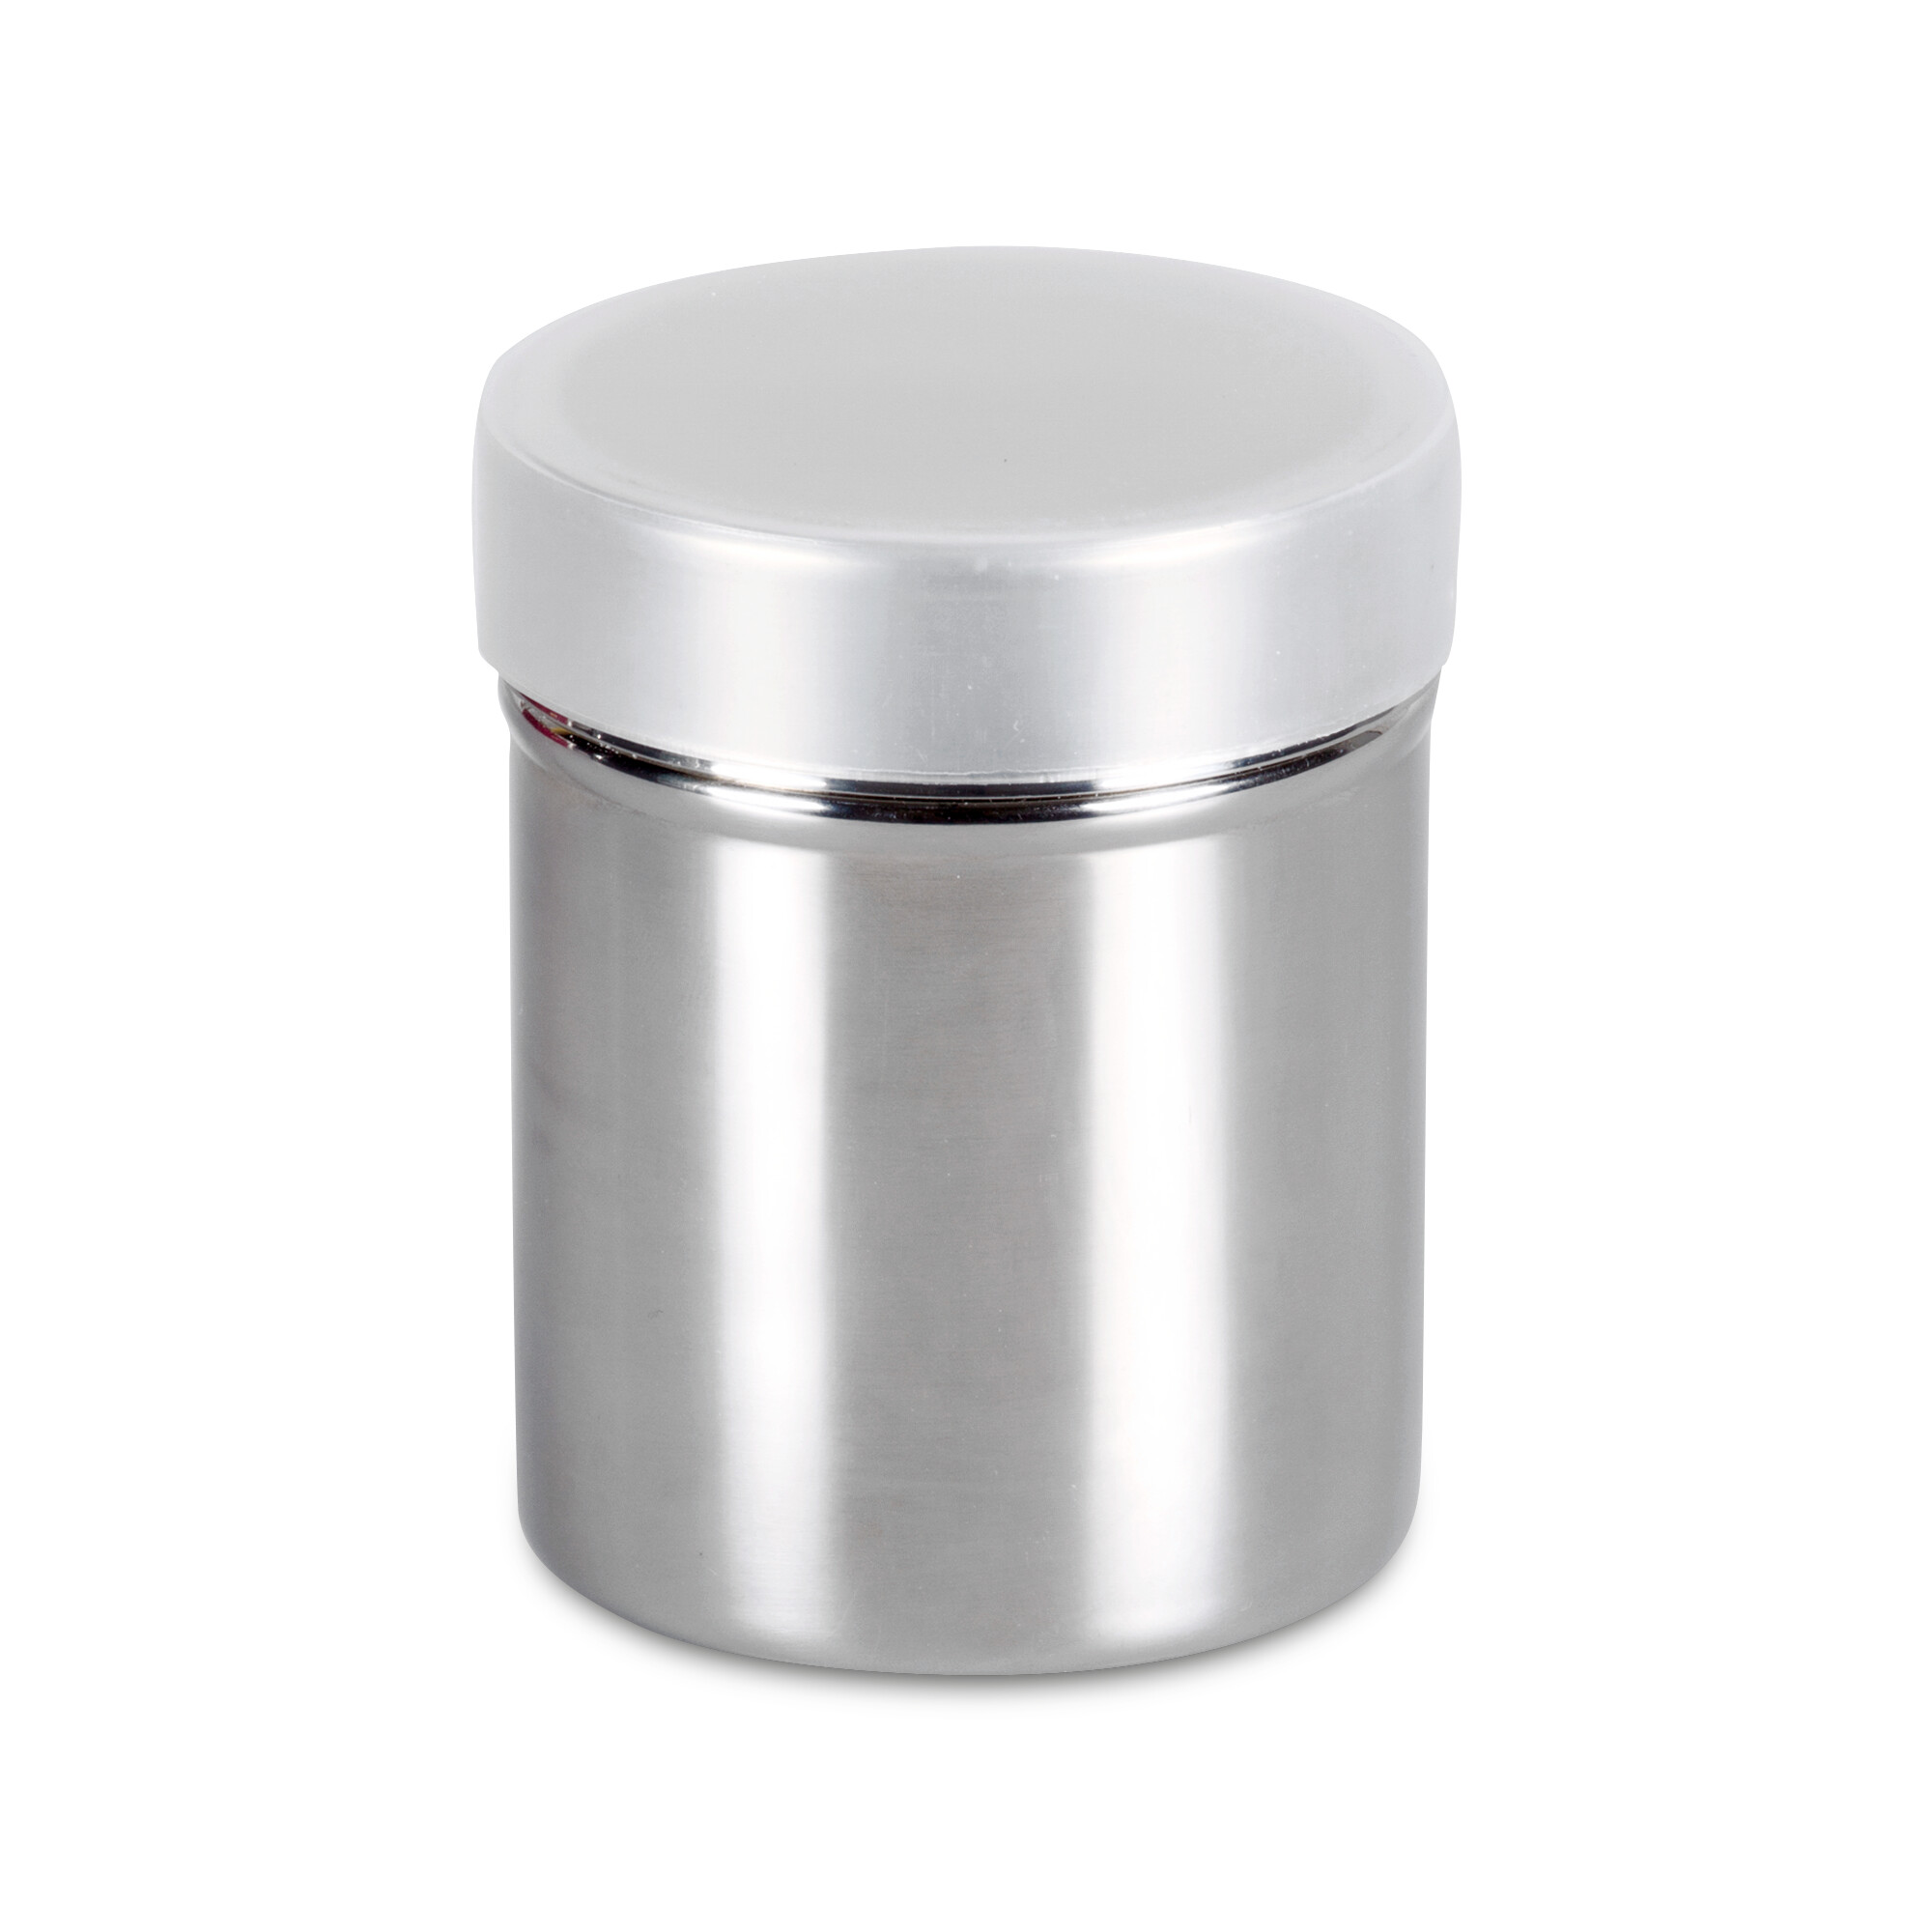 Powder sugar shaker – with lid